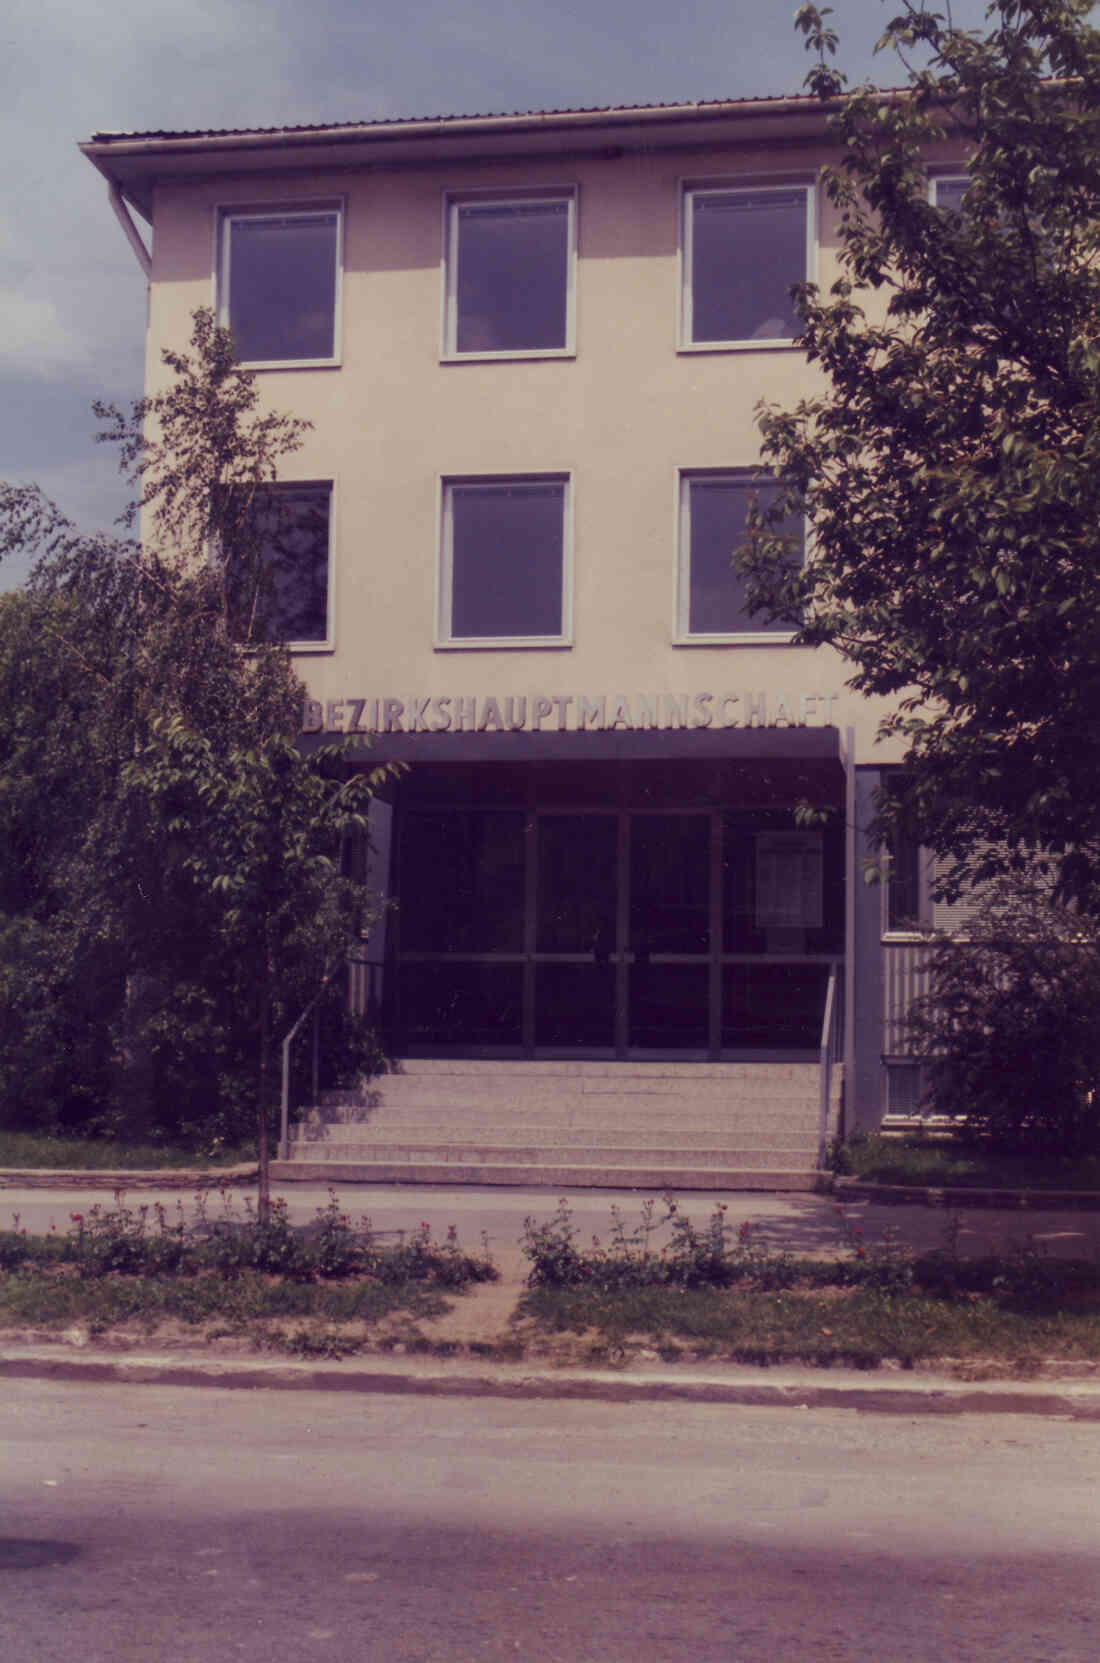 Bezirkshauptmannschaft Oberwart (Hauptplatz 1)